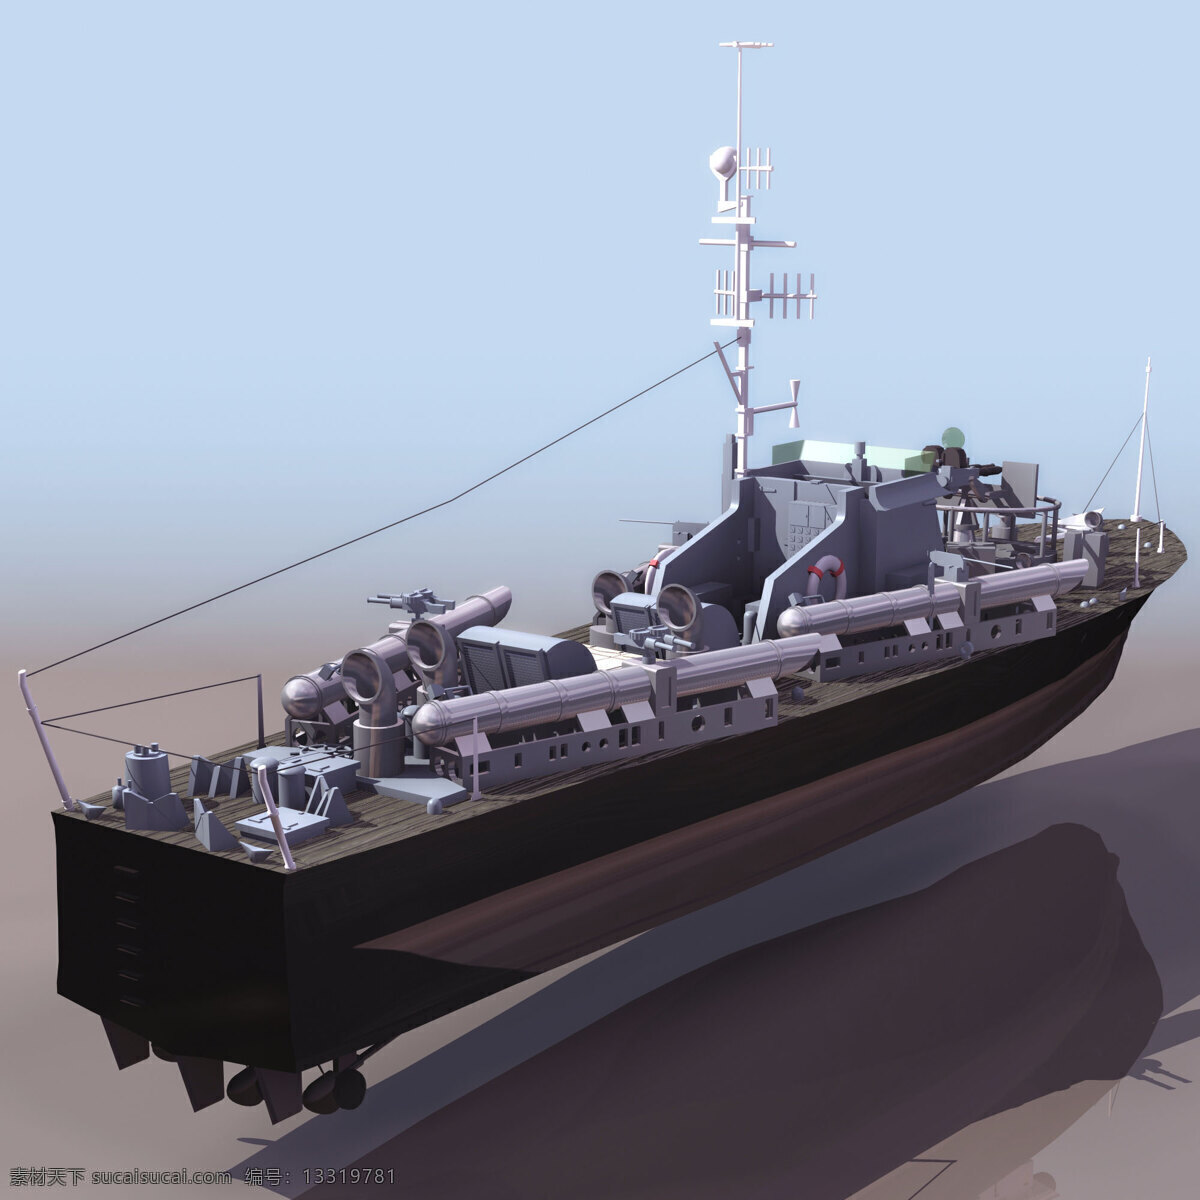 船模型014 vosper 军事模型 船模型 海军武器库 3d模型素材 其他3d模型